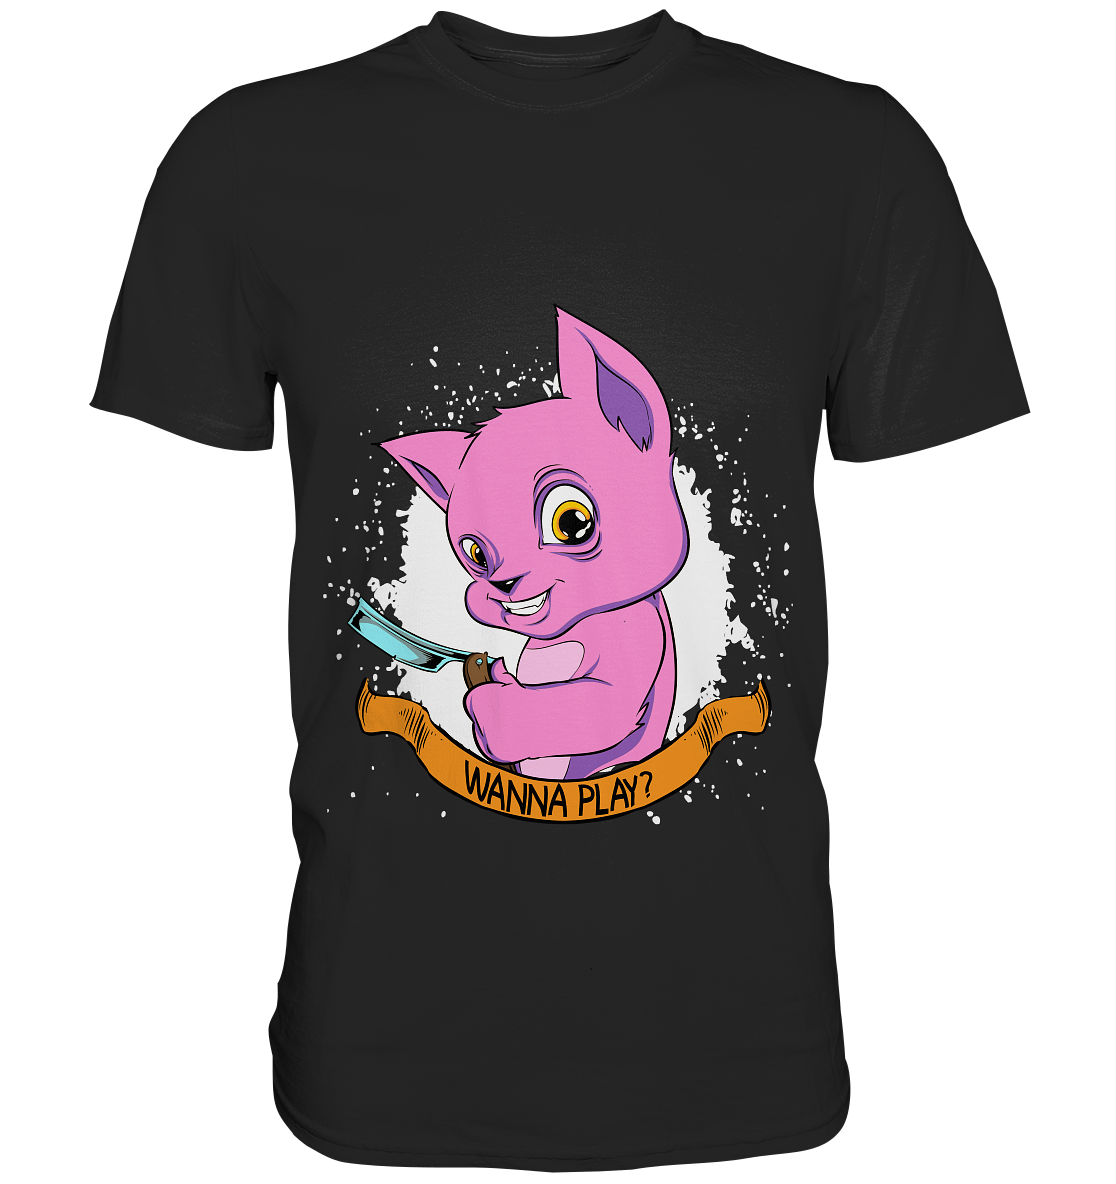 Wanna play? Pinke Katze mit Messer - Unisex Premium Shirt